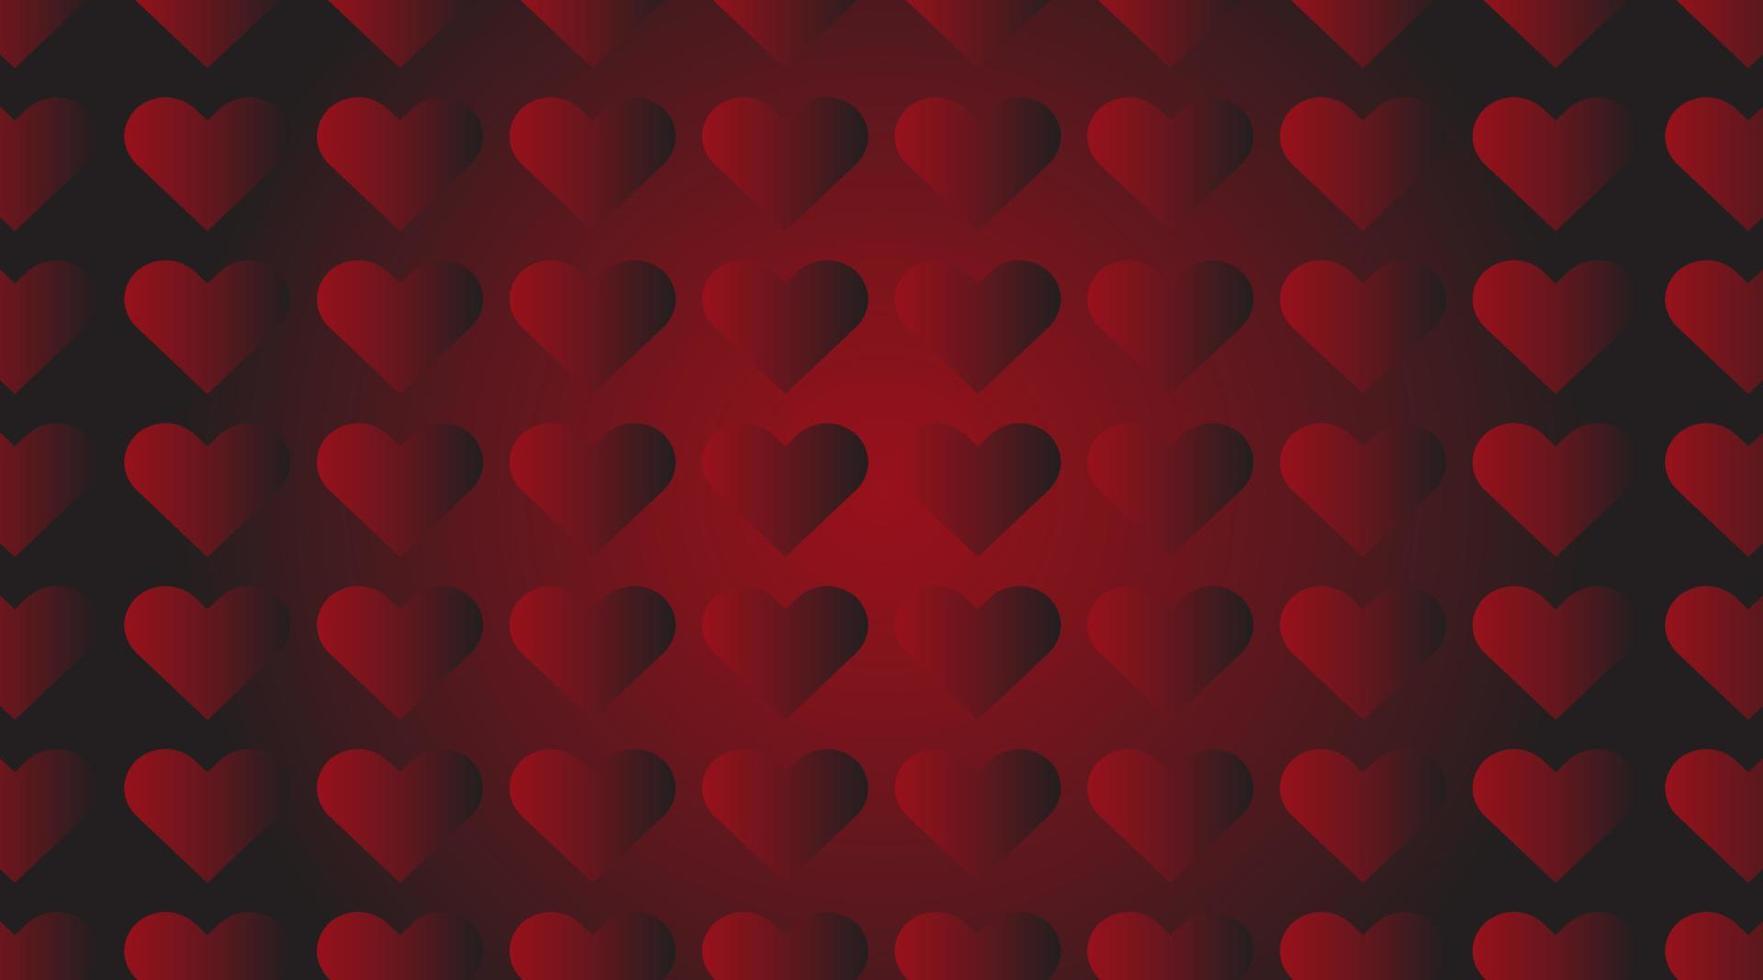 patrón sin costuras de corazones rojos. amor tema romántico. textura abstracta vectorial con pequeños corazones lineales. diseño minimalista elegante para envolver, tela, tela, estampado, decoración de bodas vector